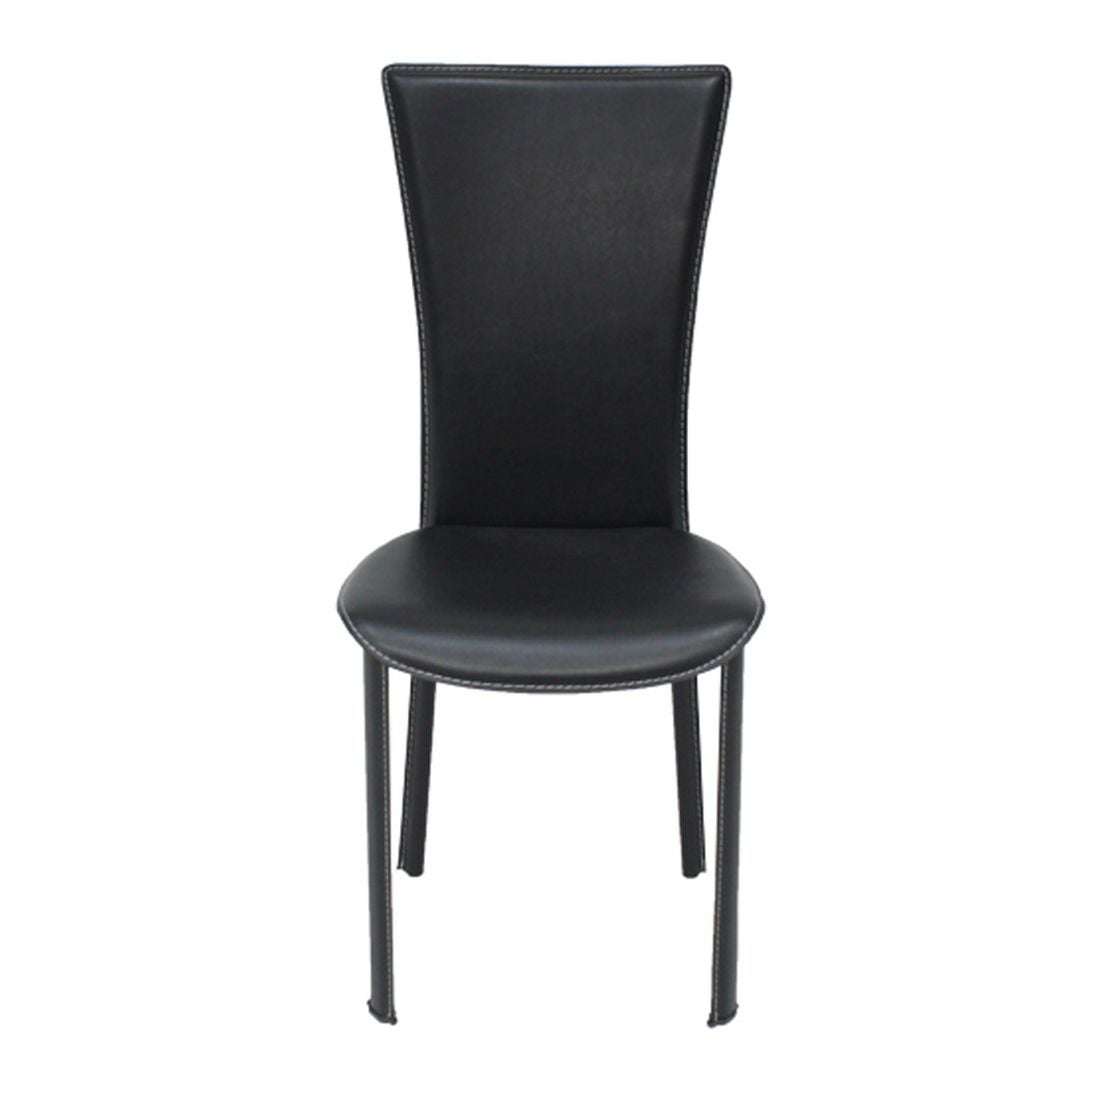 เก้าอี้ทานอาหาร เก้าอี้เหล็กเบาะหนัง รุ่น Yindee-SB Design Square